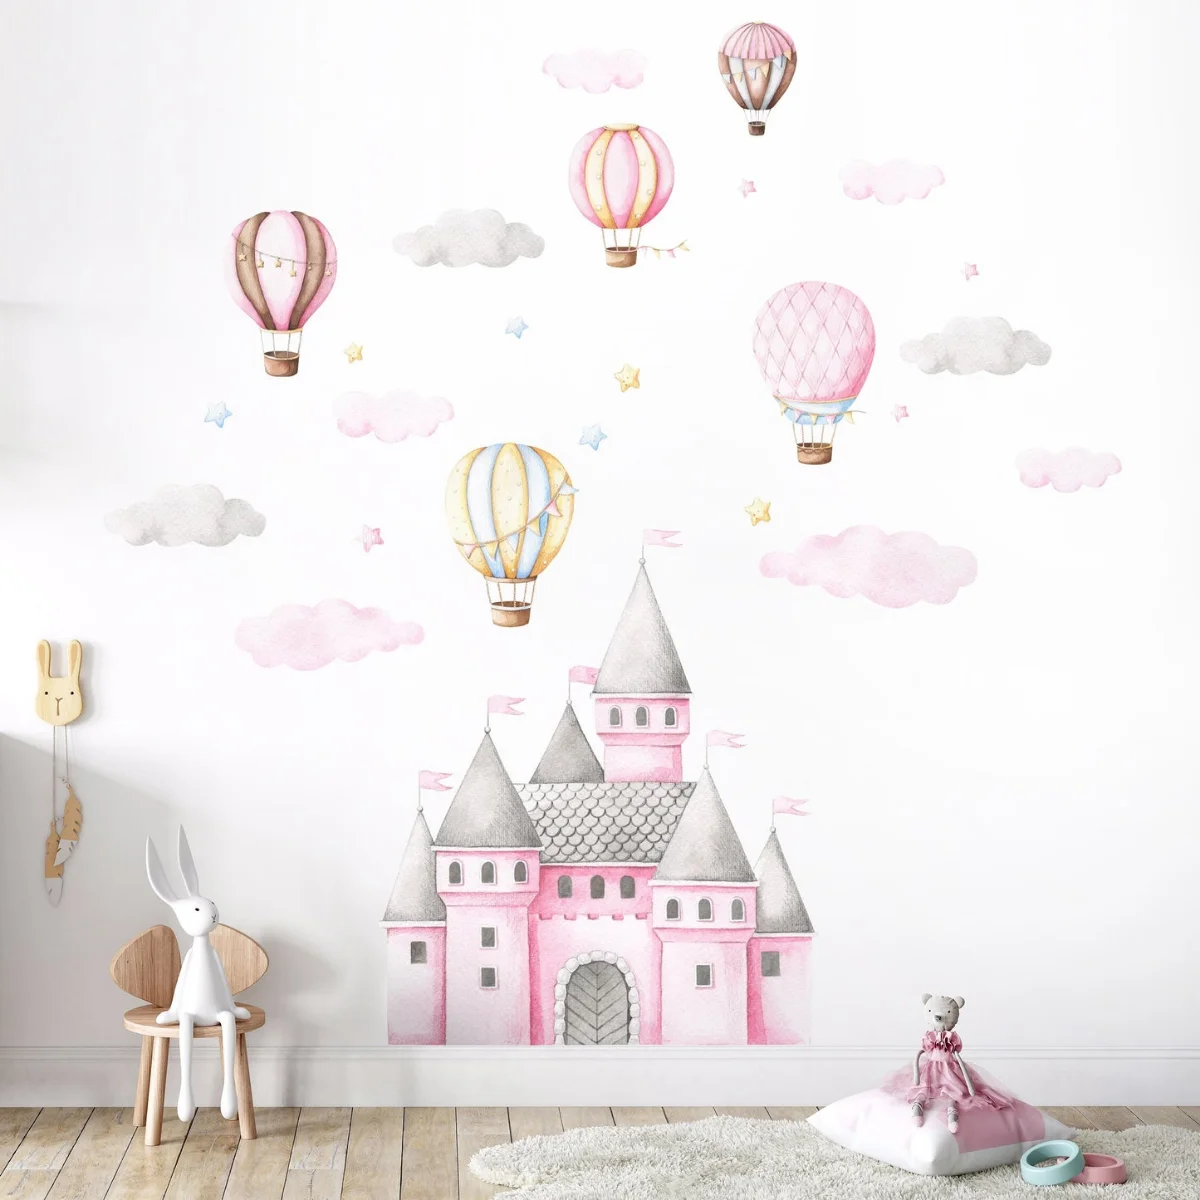 ۲۰ مدل تزئینات دیواری خلاقانه برای اتاق خواب دخترانه